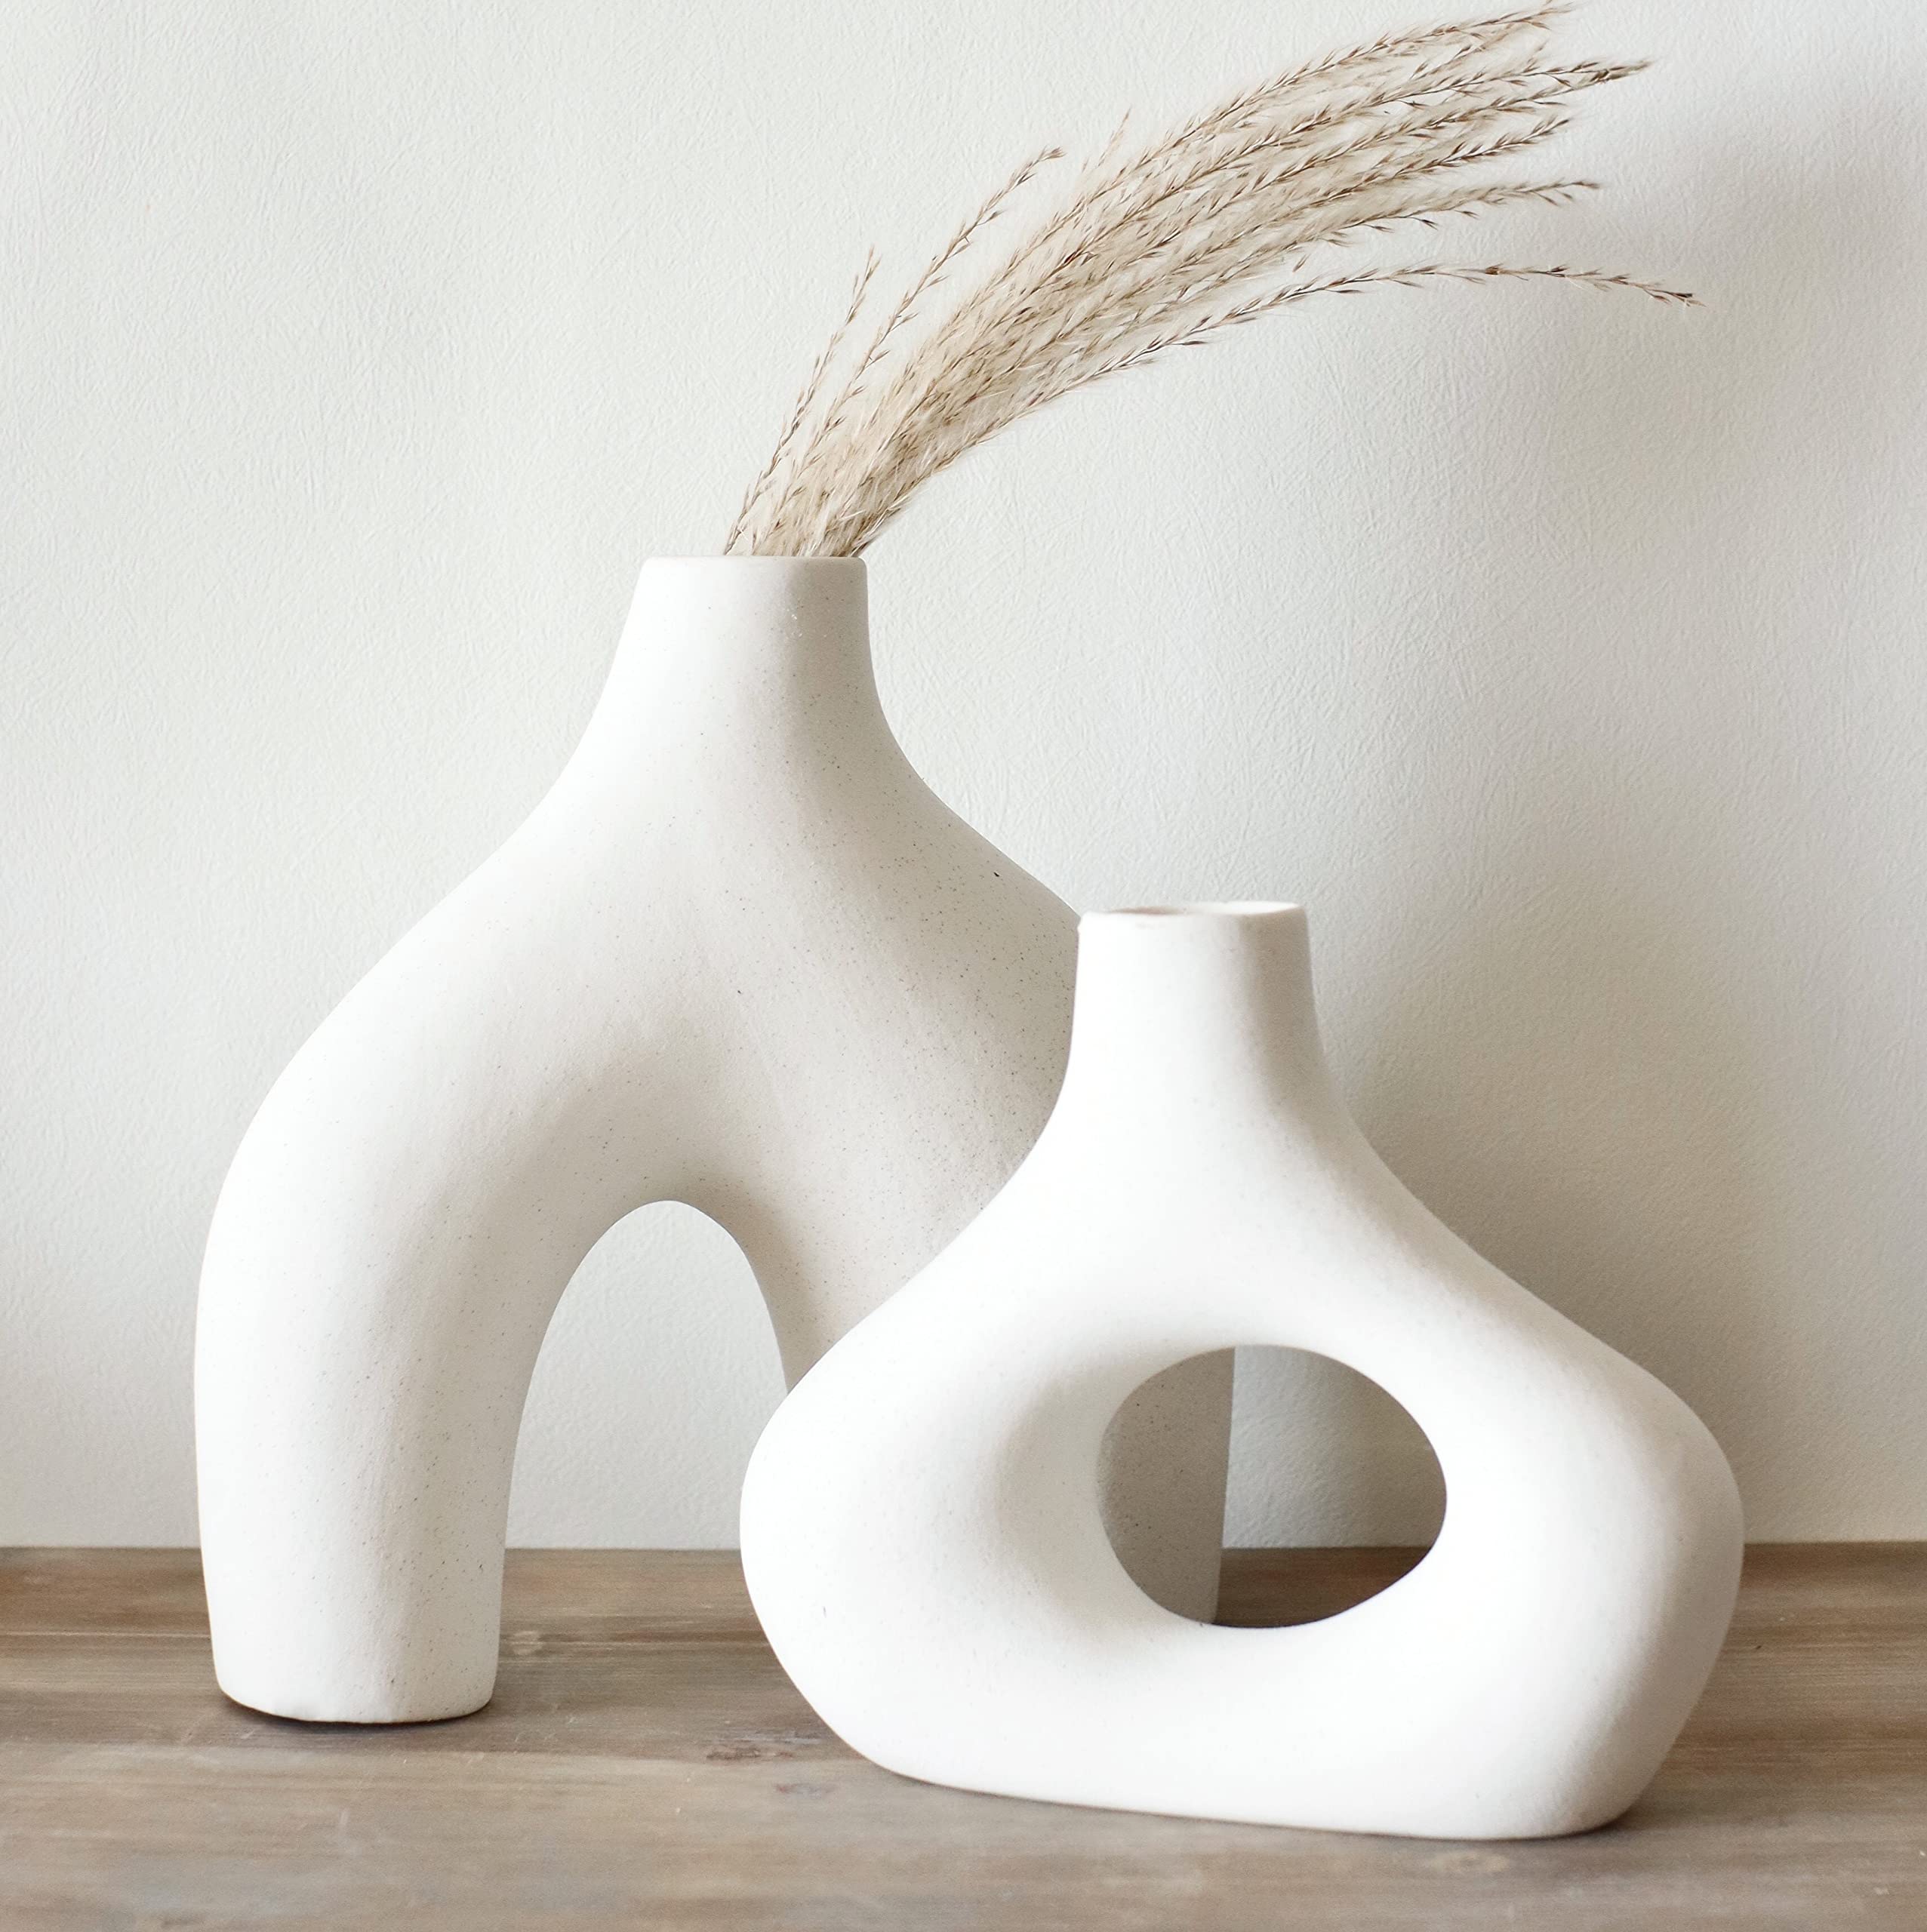 Carrot's Den Donut Vase, Set of 2 - Minimalist Nordic Style, White Ceramic Hollow Donut Vase Decor | Table Centerpiece, Boho, Wedding, Living Room, Bookshelf, Office, Modern Home Decor (Warm White)